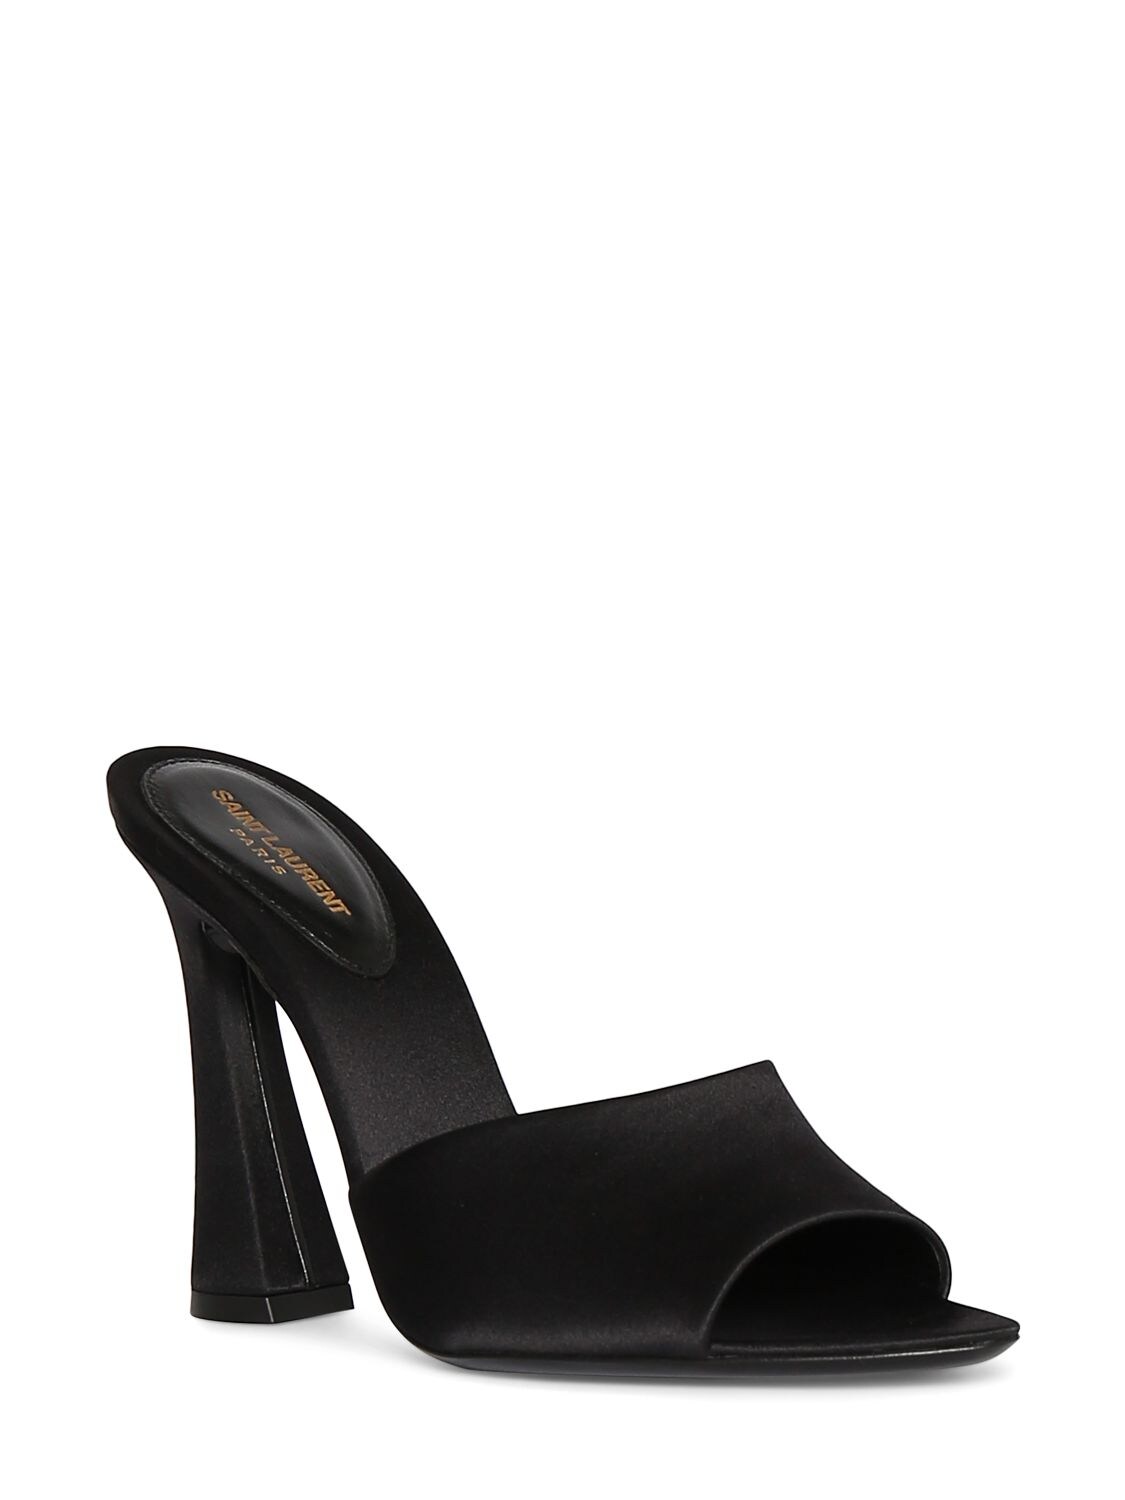 Shop Saint Laurent 105mm Suite Satin Mule Sandals In Black